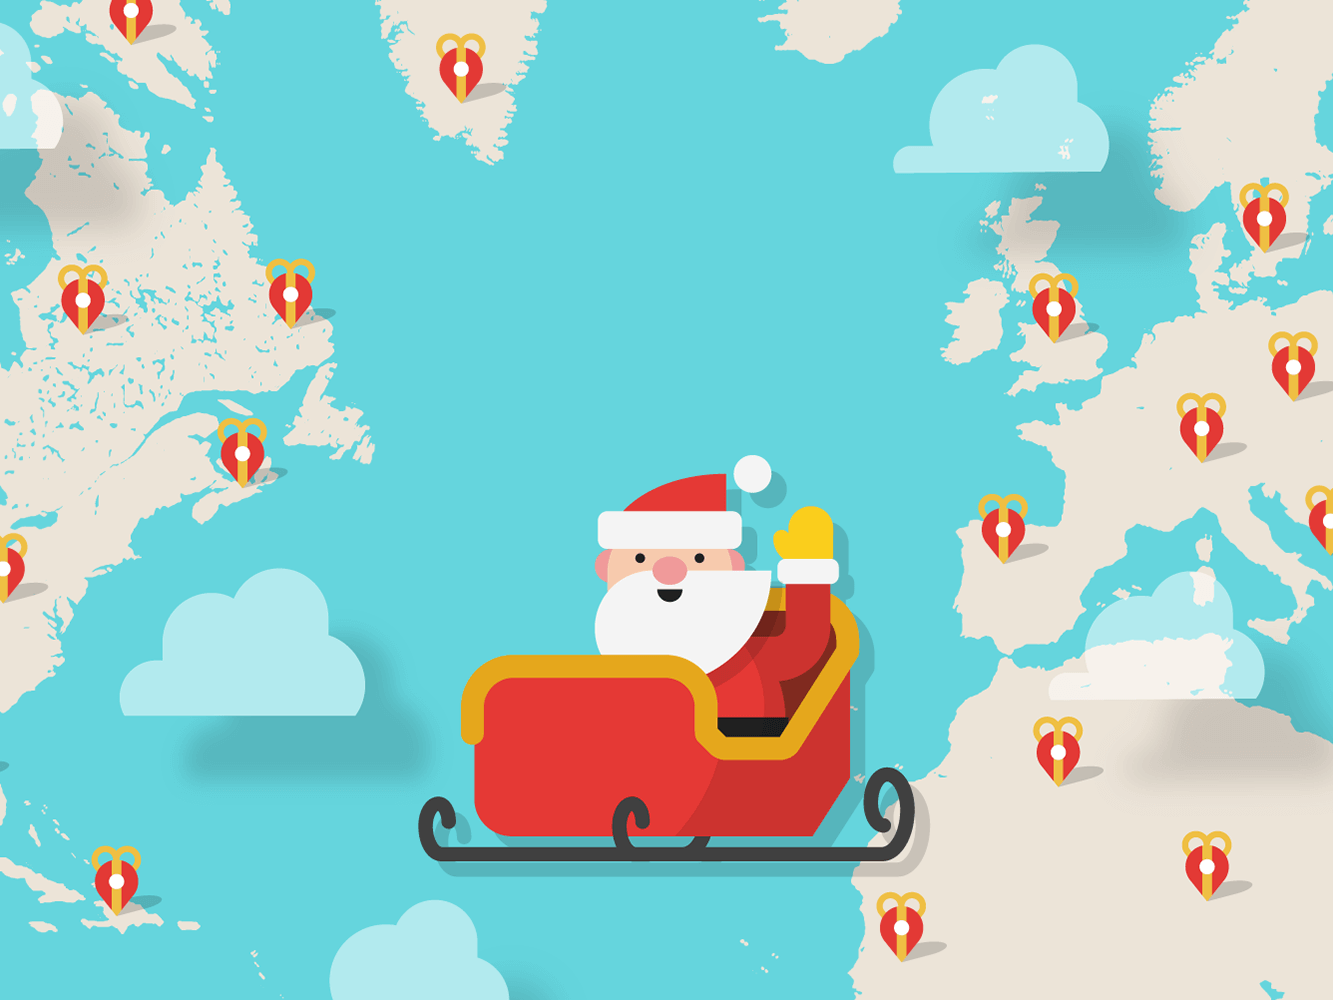 Google запустив традиційний Santa Tracker, який допоможе відстежити переміщення Санта-Клауса